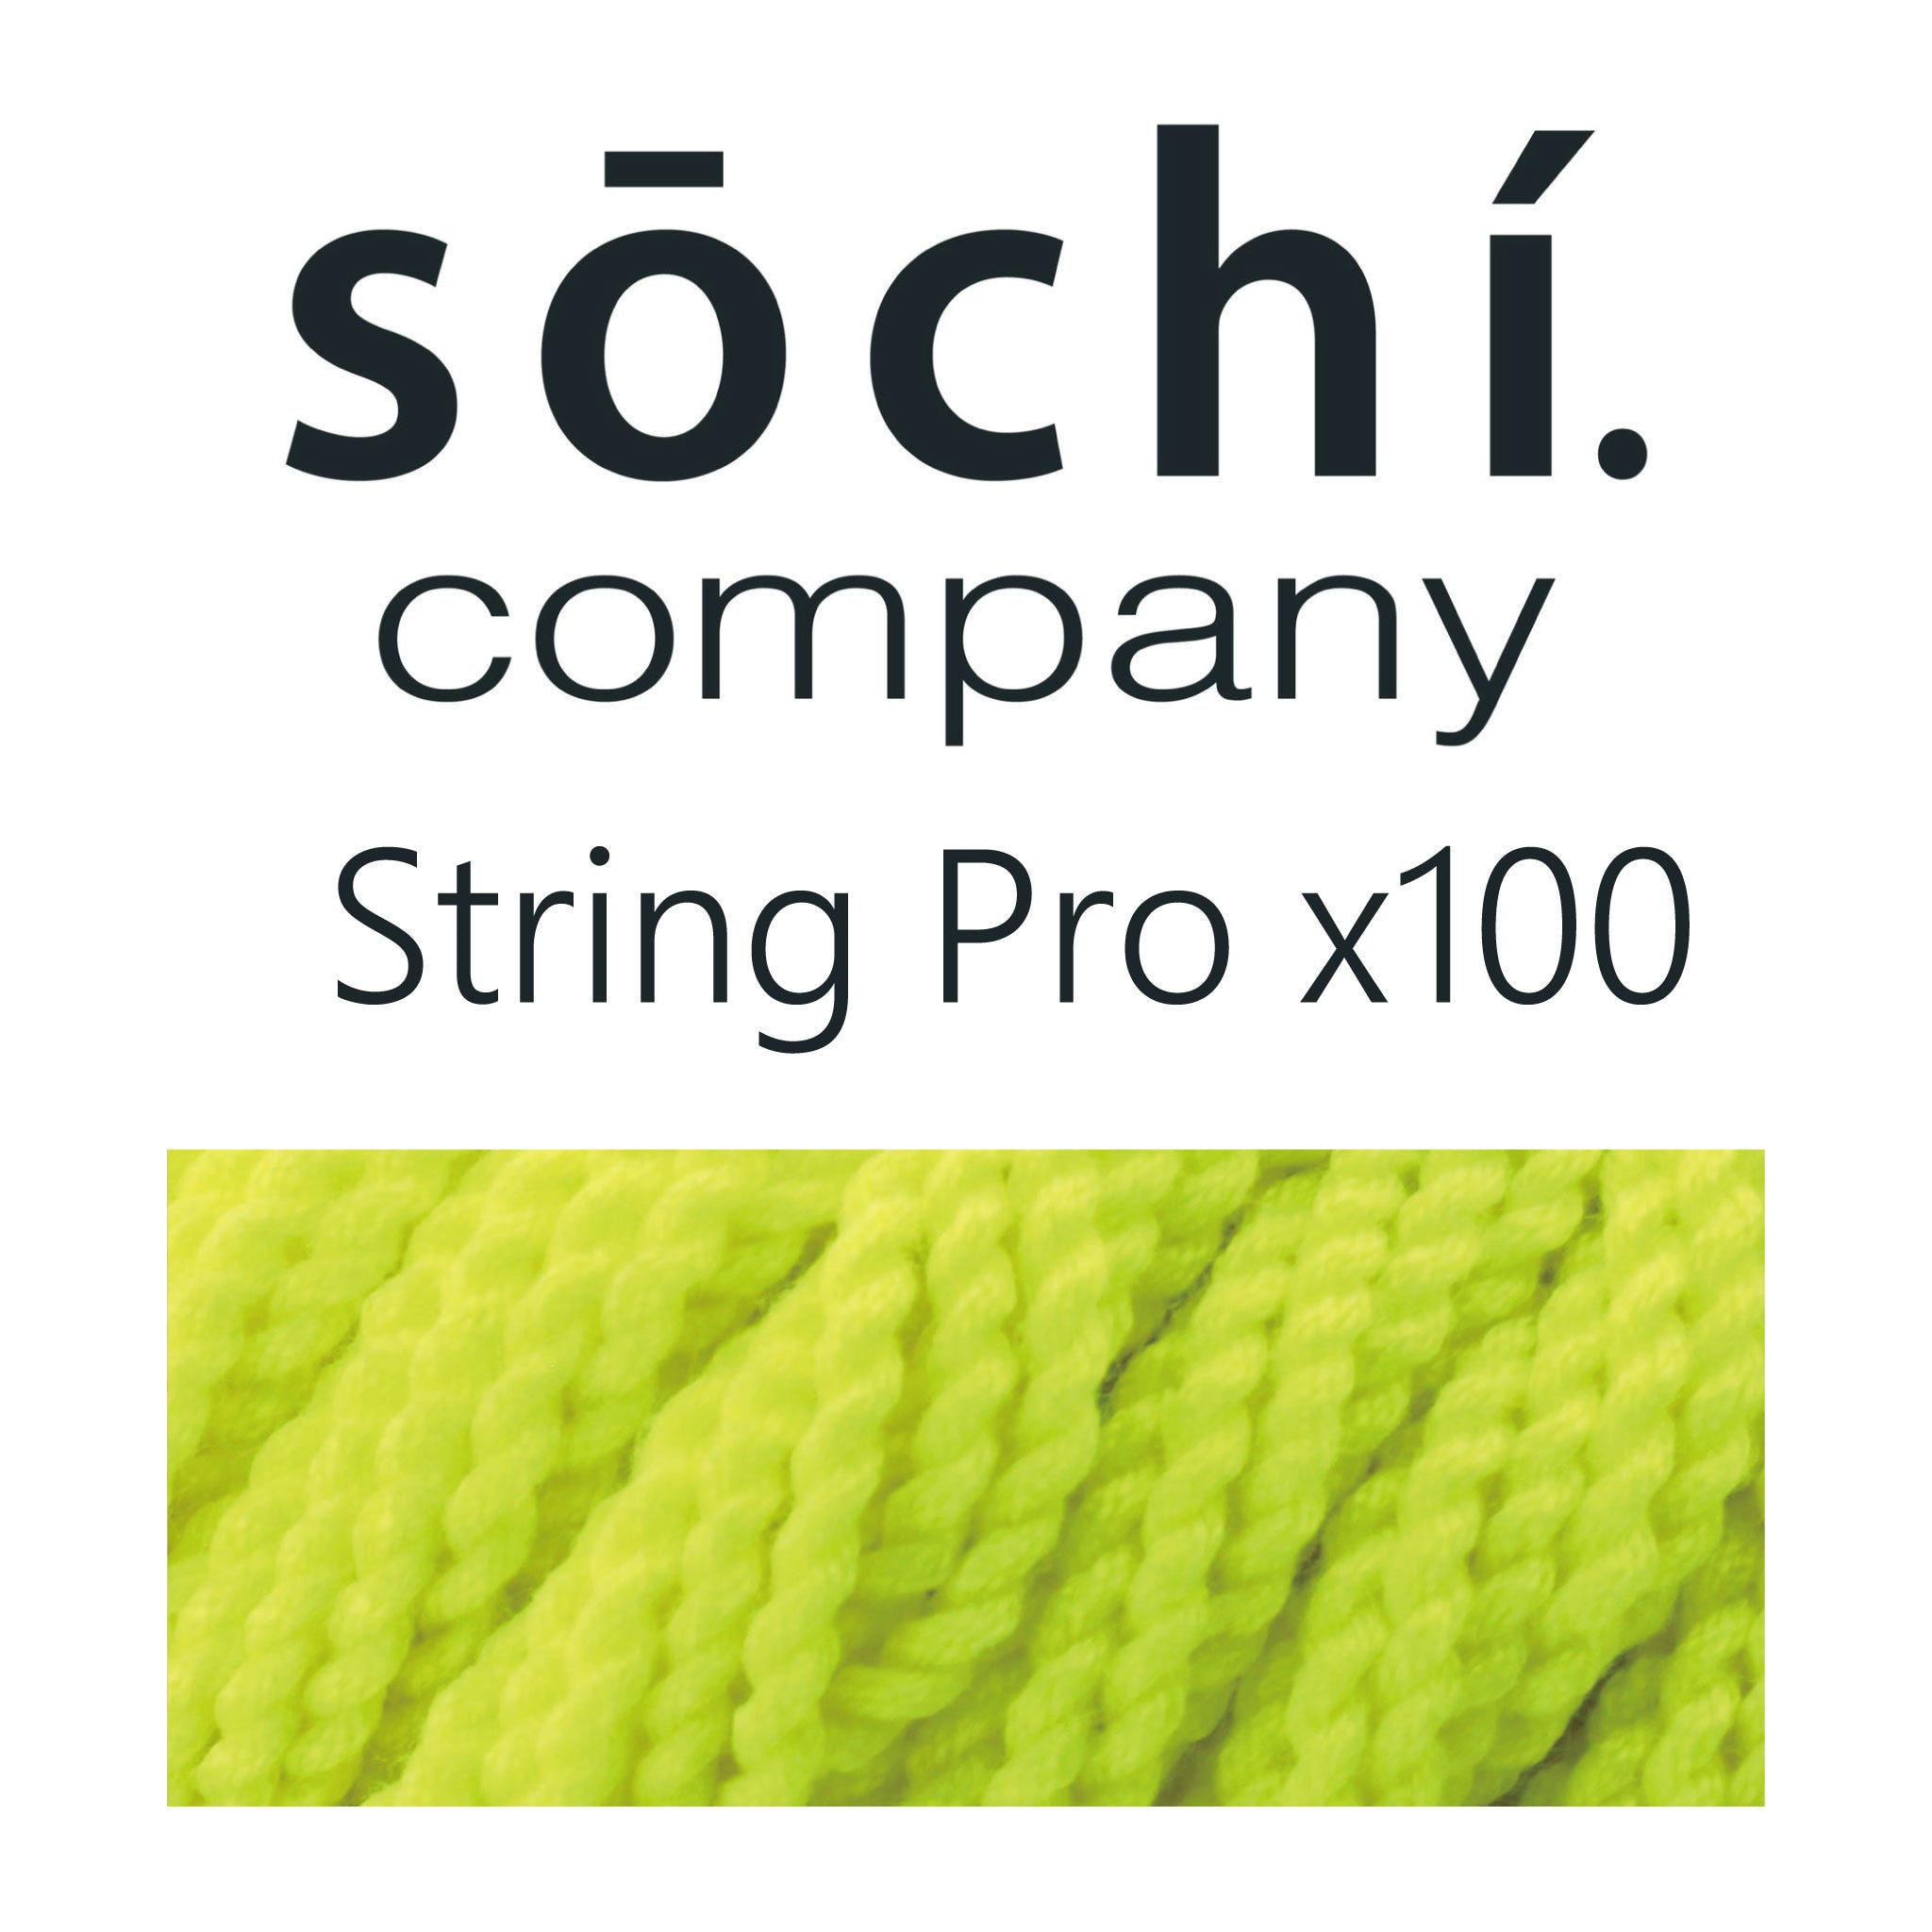 Sōchí String Pro x100 - Sōchí Company